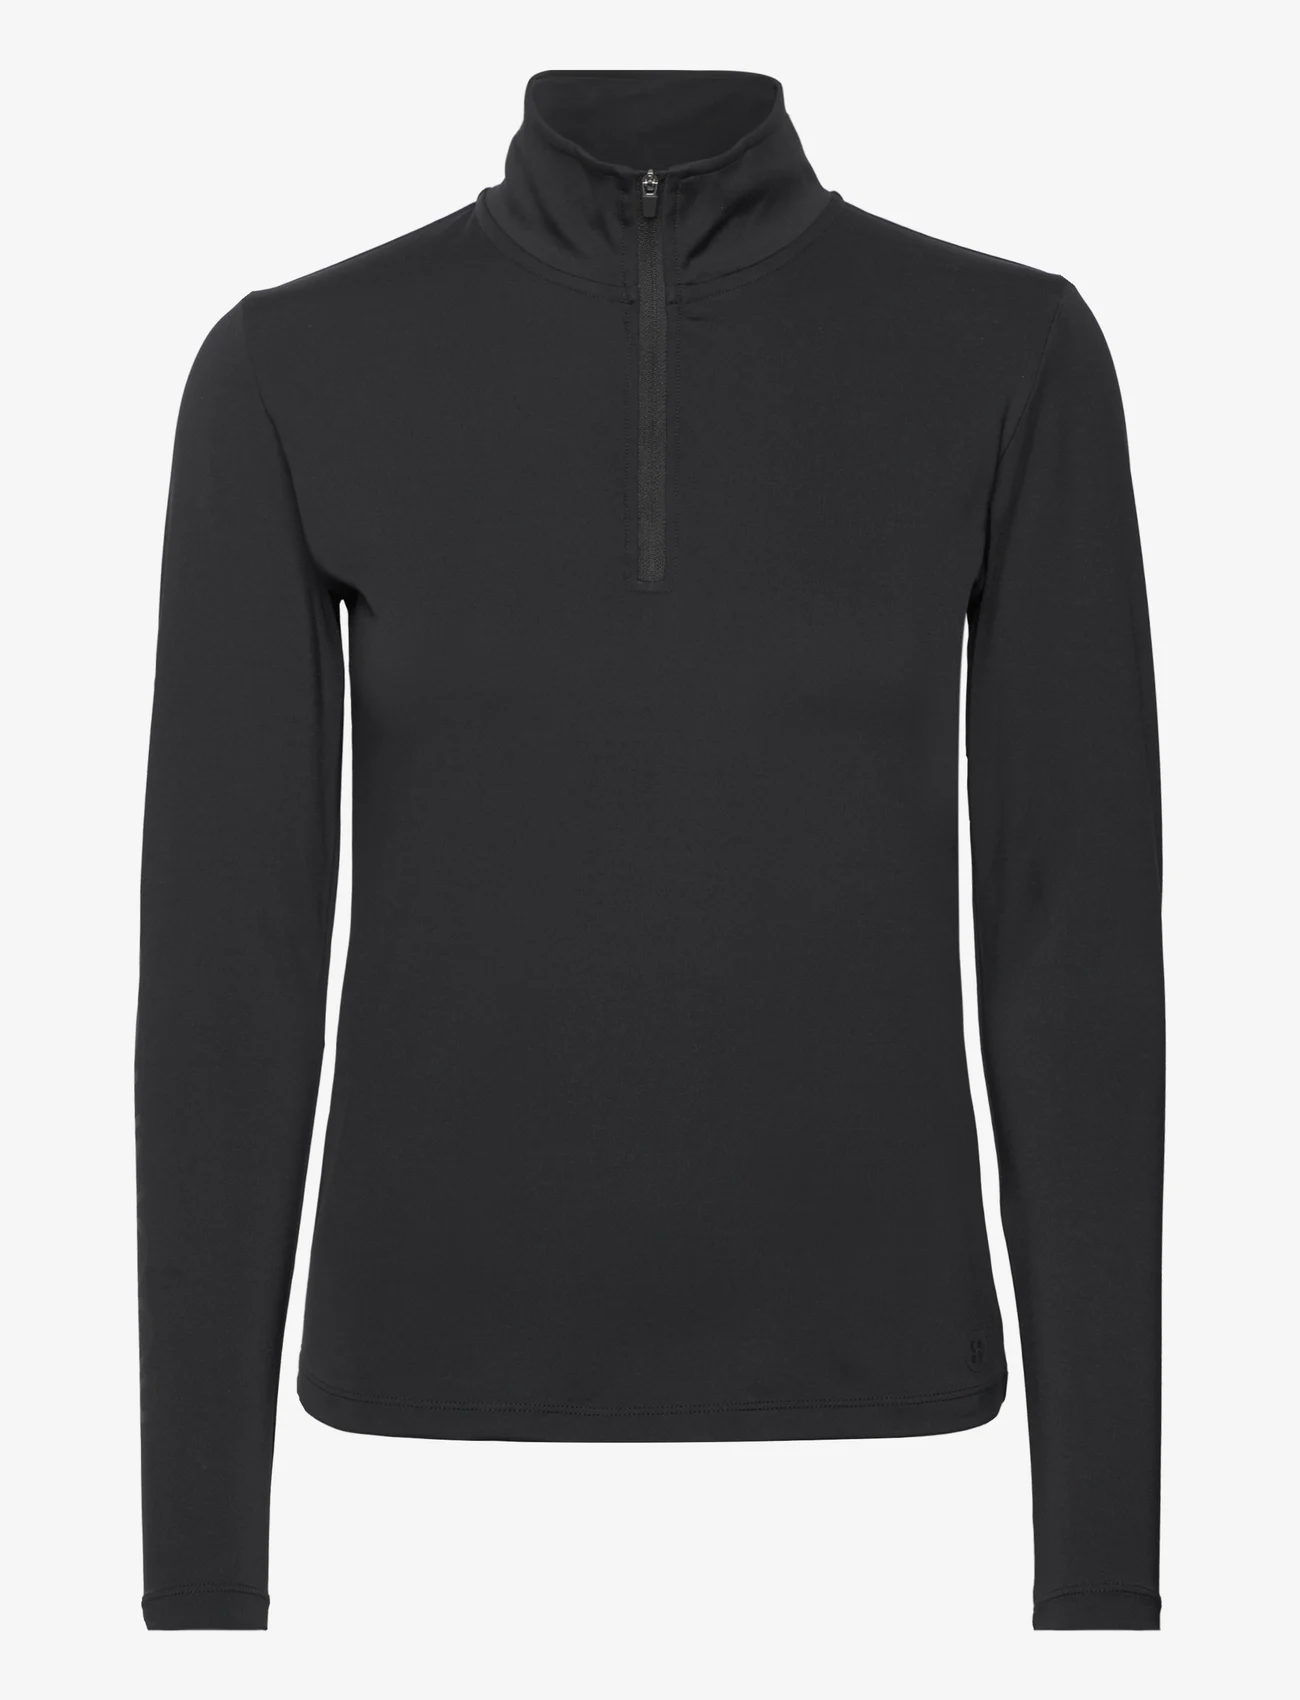 Sofie Schnoor - T-shirt long-sleeve - sportinės palaidinukės - black - 0